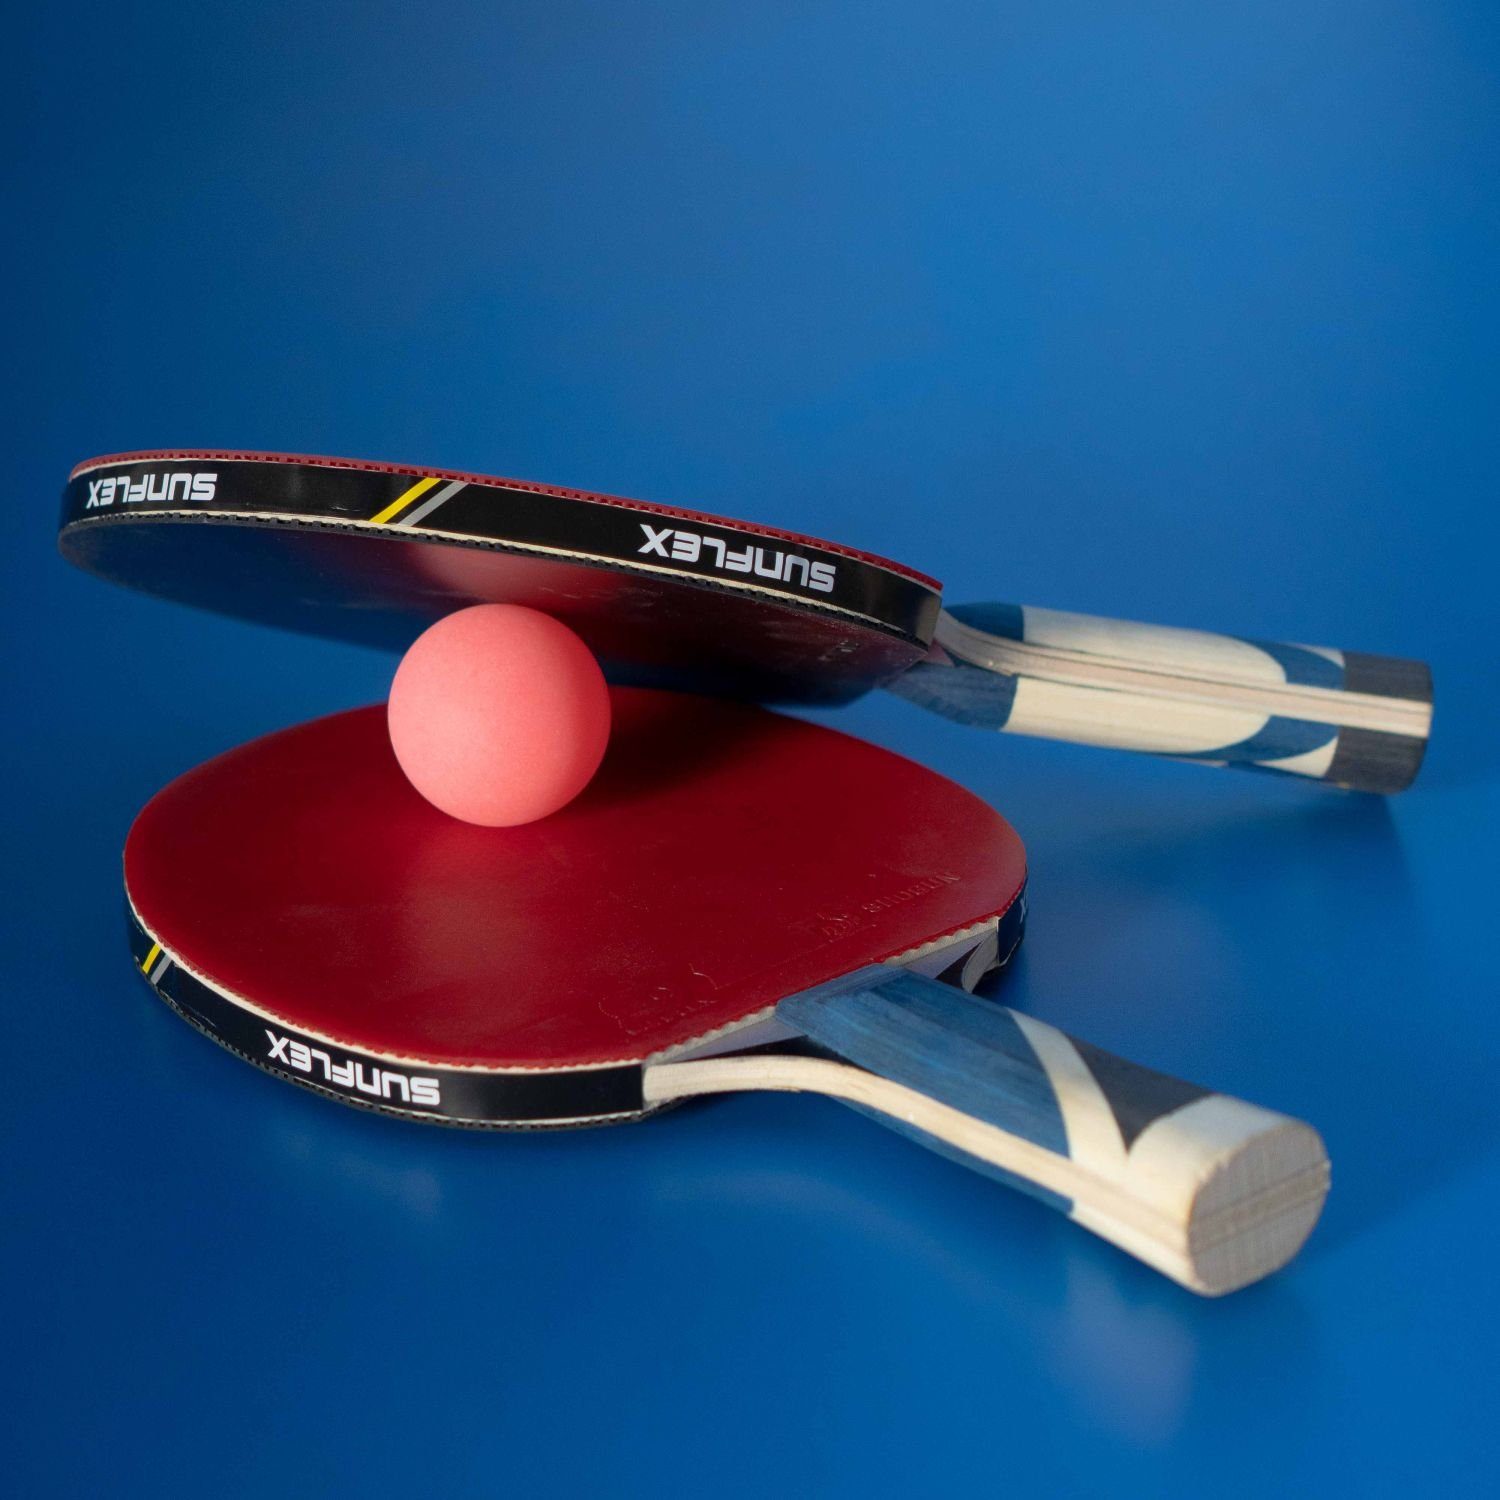 Sunflex Tischtennisball Bälle 3 Tischtennisball Bälle Ball Tischtennis Pink, Balls